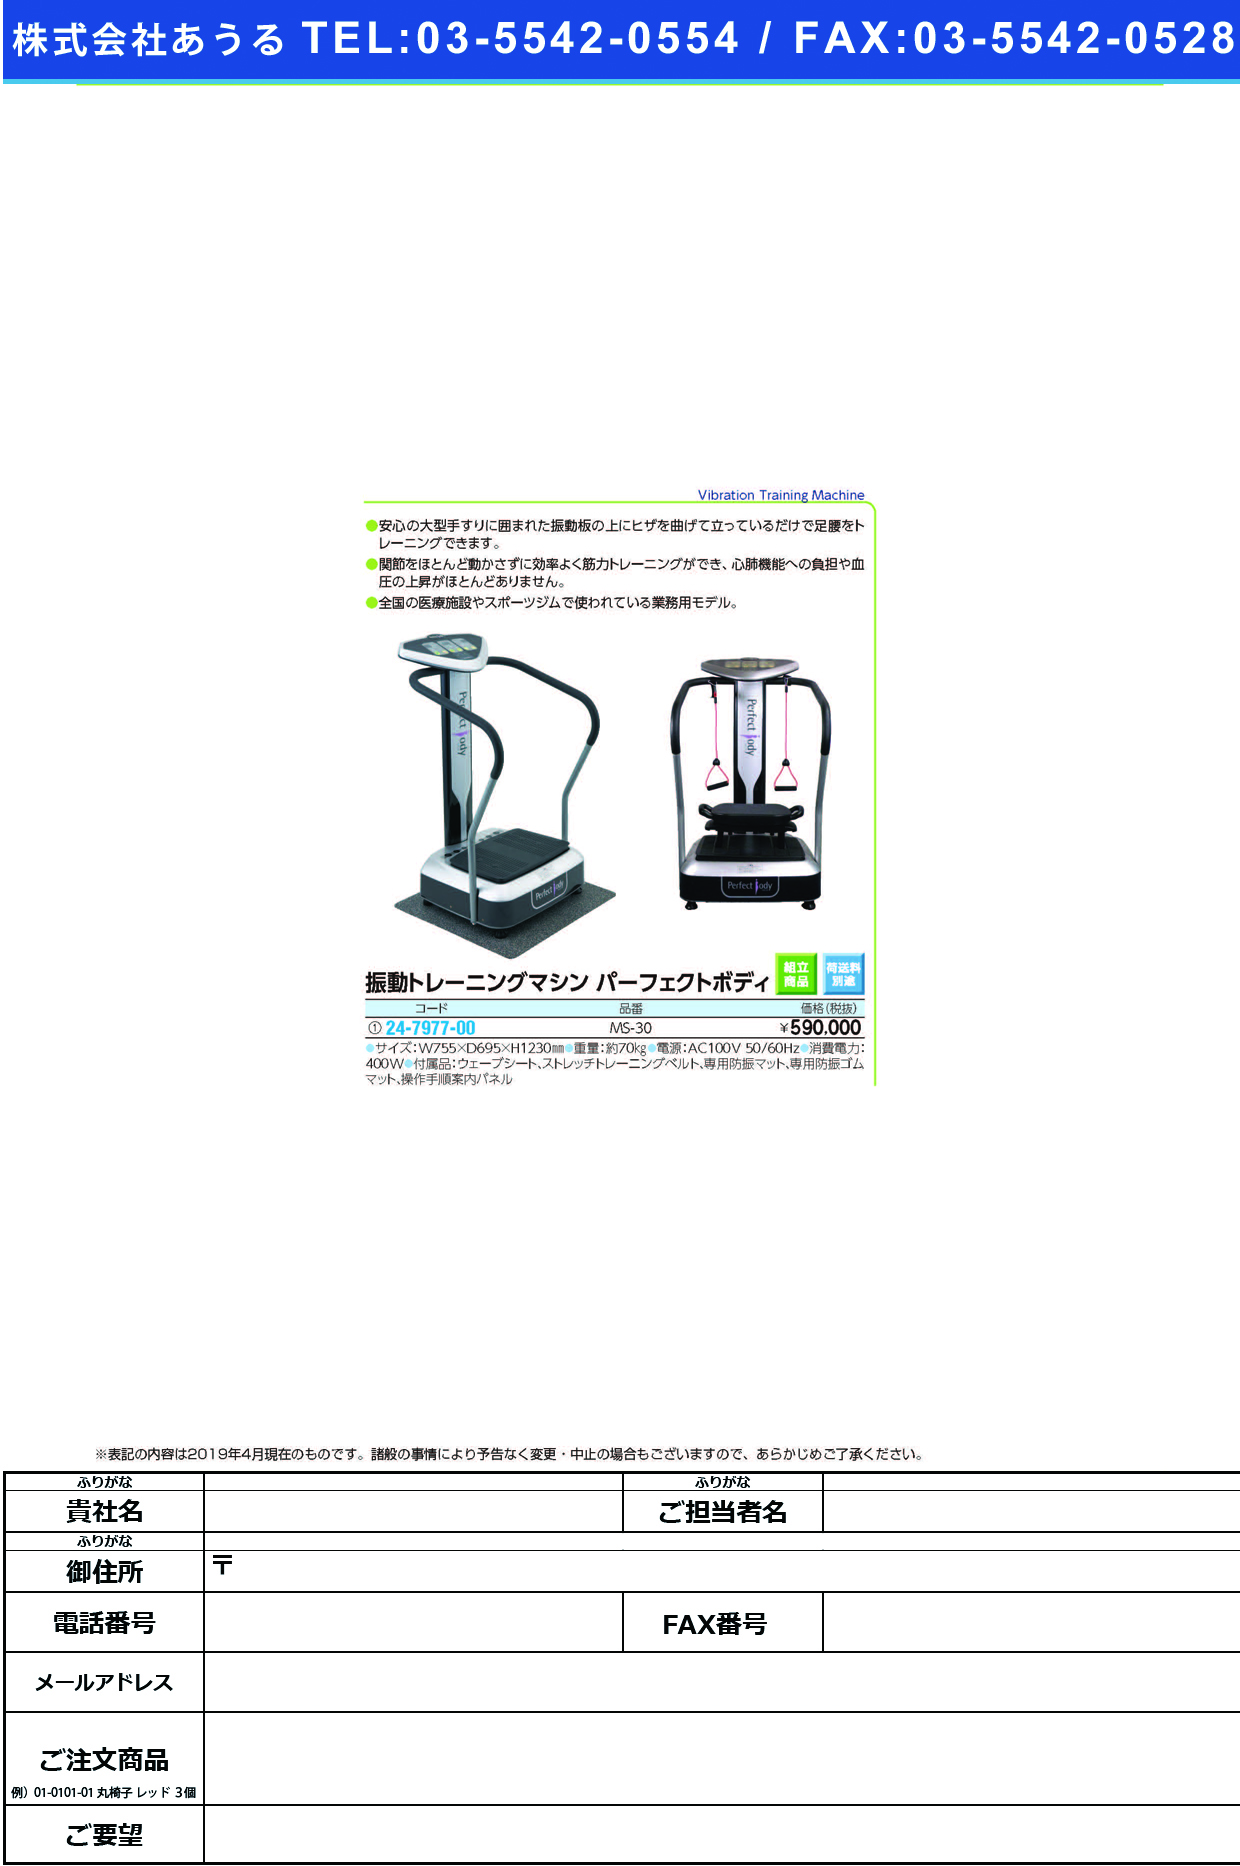 (24-7977-00)パーフェクトボディMS-30 ﾊﾟｰﾌｪｸﾄﾎﾞﾃﾞｨ(明成)【1台単位】【2019年カタログ商品】